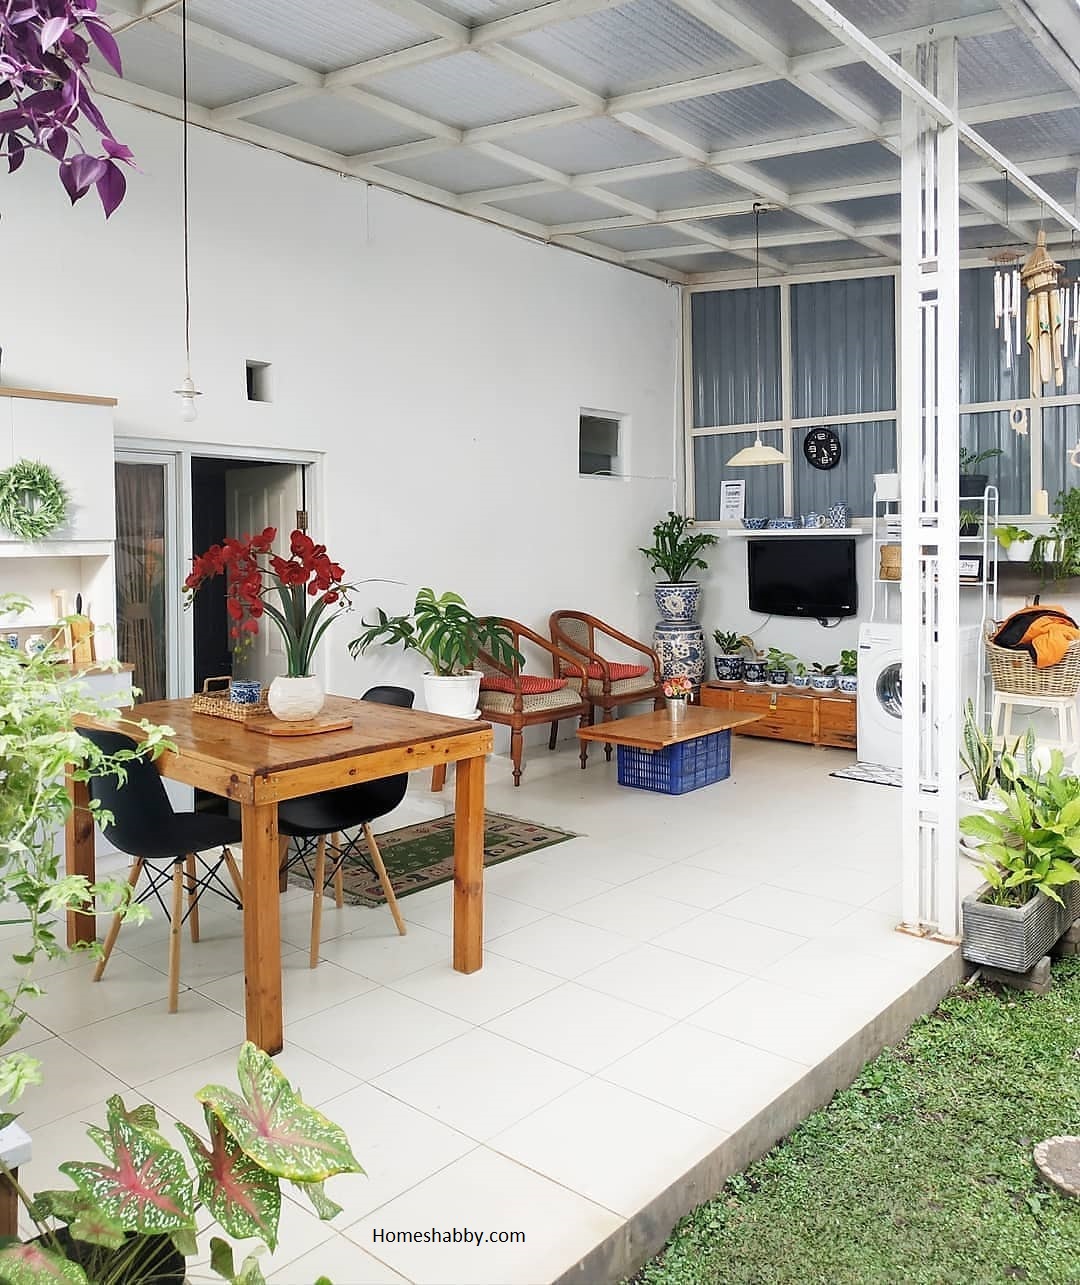 7 Inspirasi Teras Belakang Rumah Dengan Atap Transparan Homeshabbycom Design Home Plans